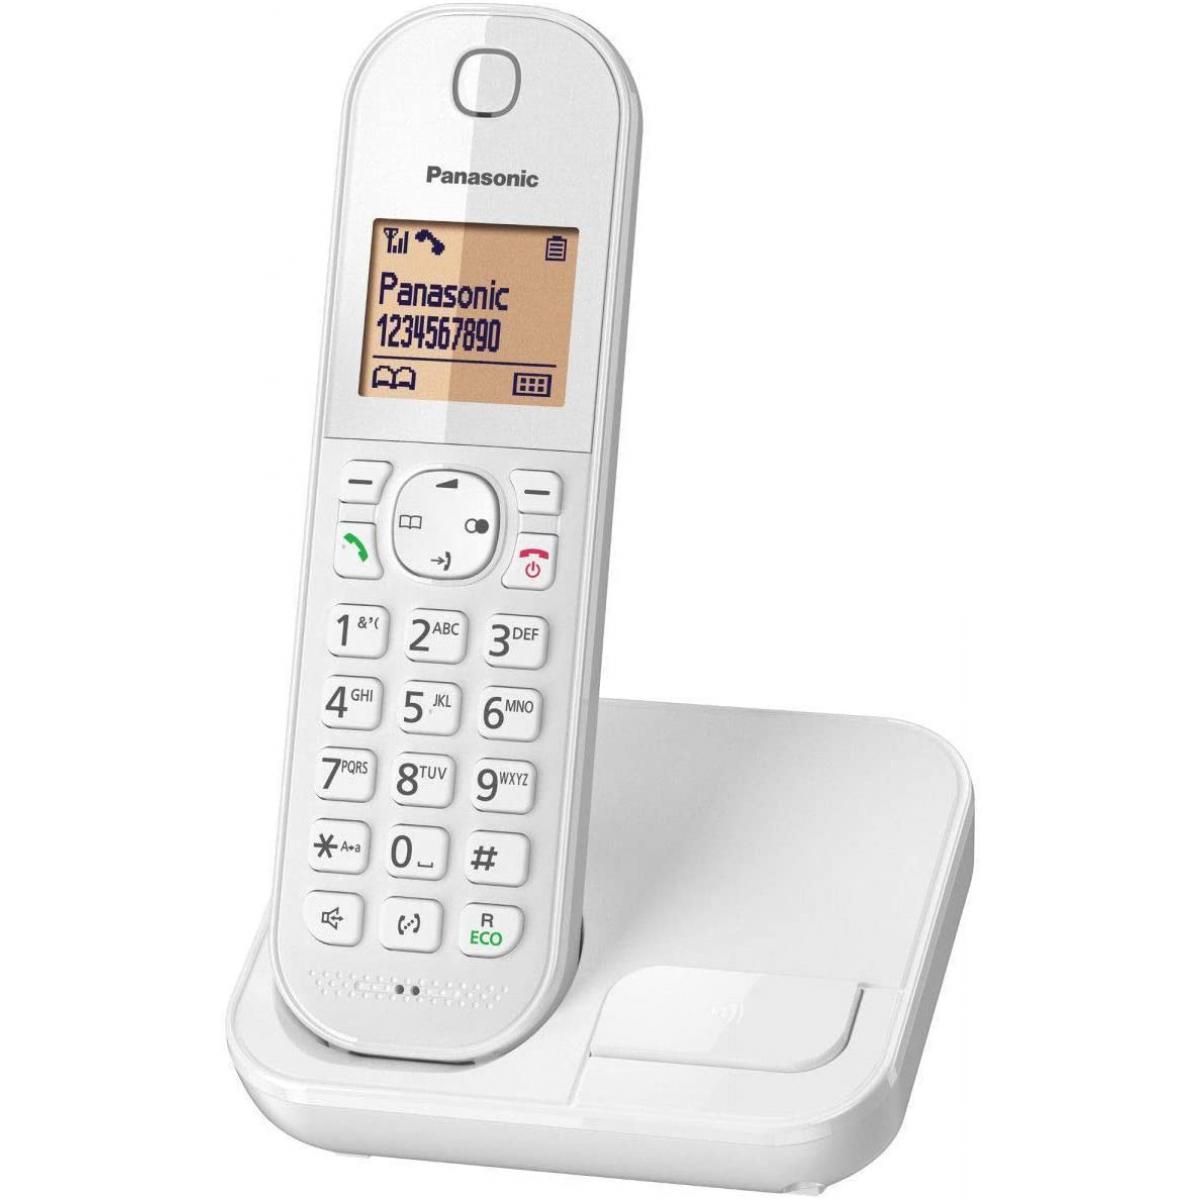 Panasonic - Rasage Electrique - telephone sans Fil dect blanc - Téléphone fixe-répondeur